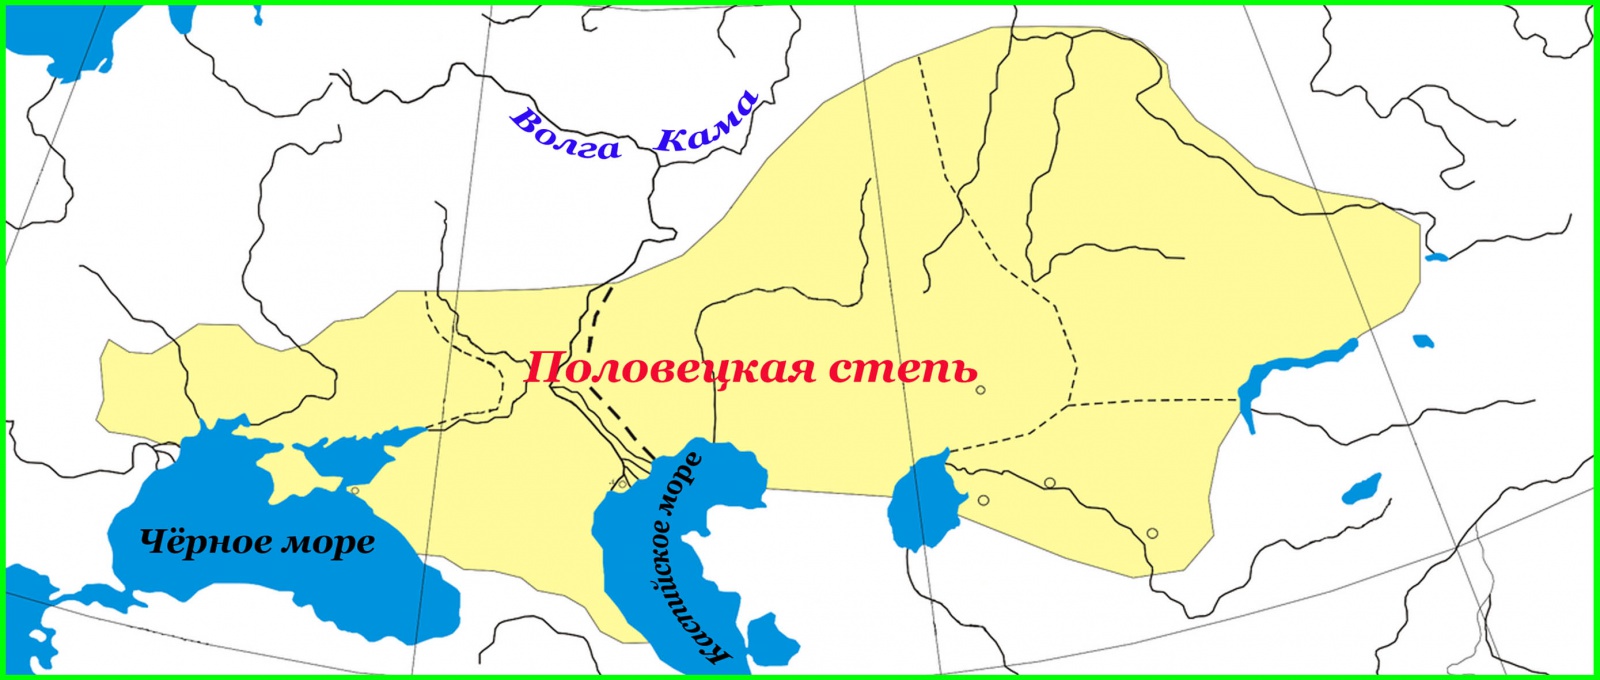 Половецкая степь, конец XI — начало XII века